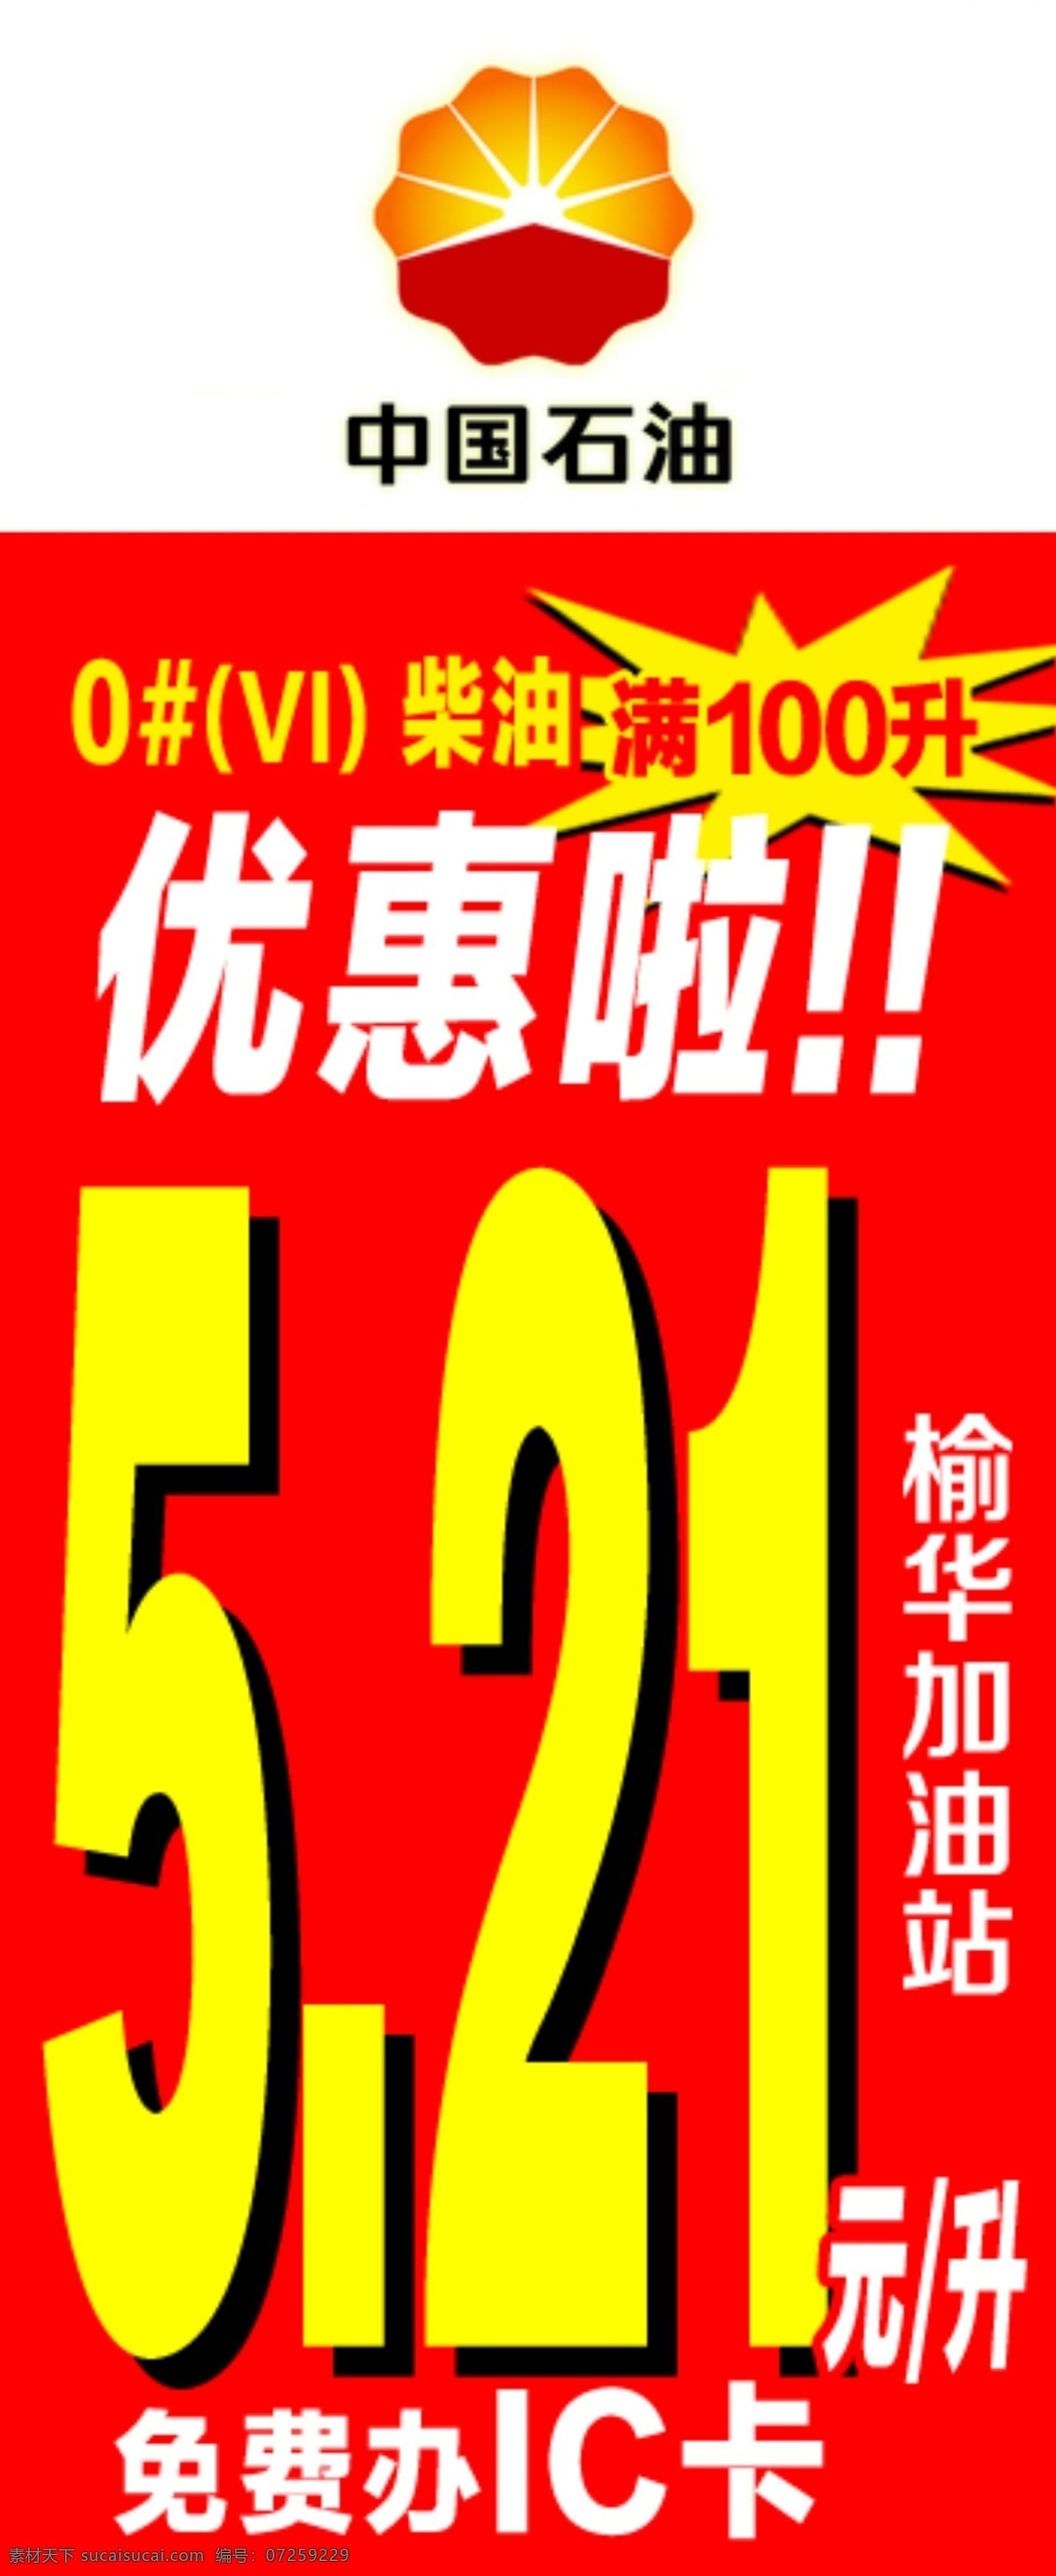 优惠海报 中国石油 优惠 爆炸贴 红色背景 免费办ic卡 加油站 柴油